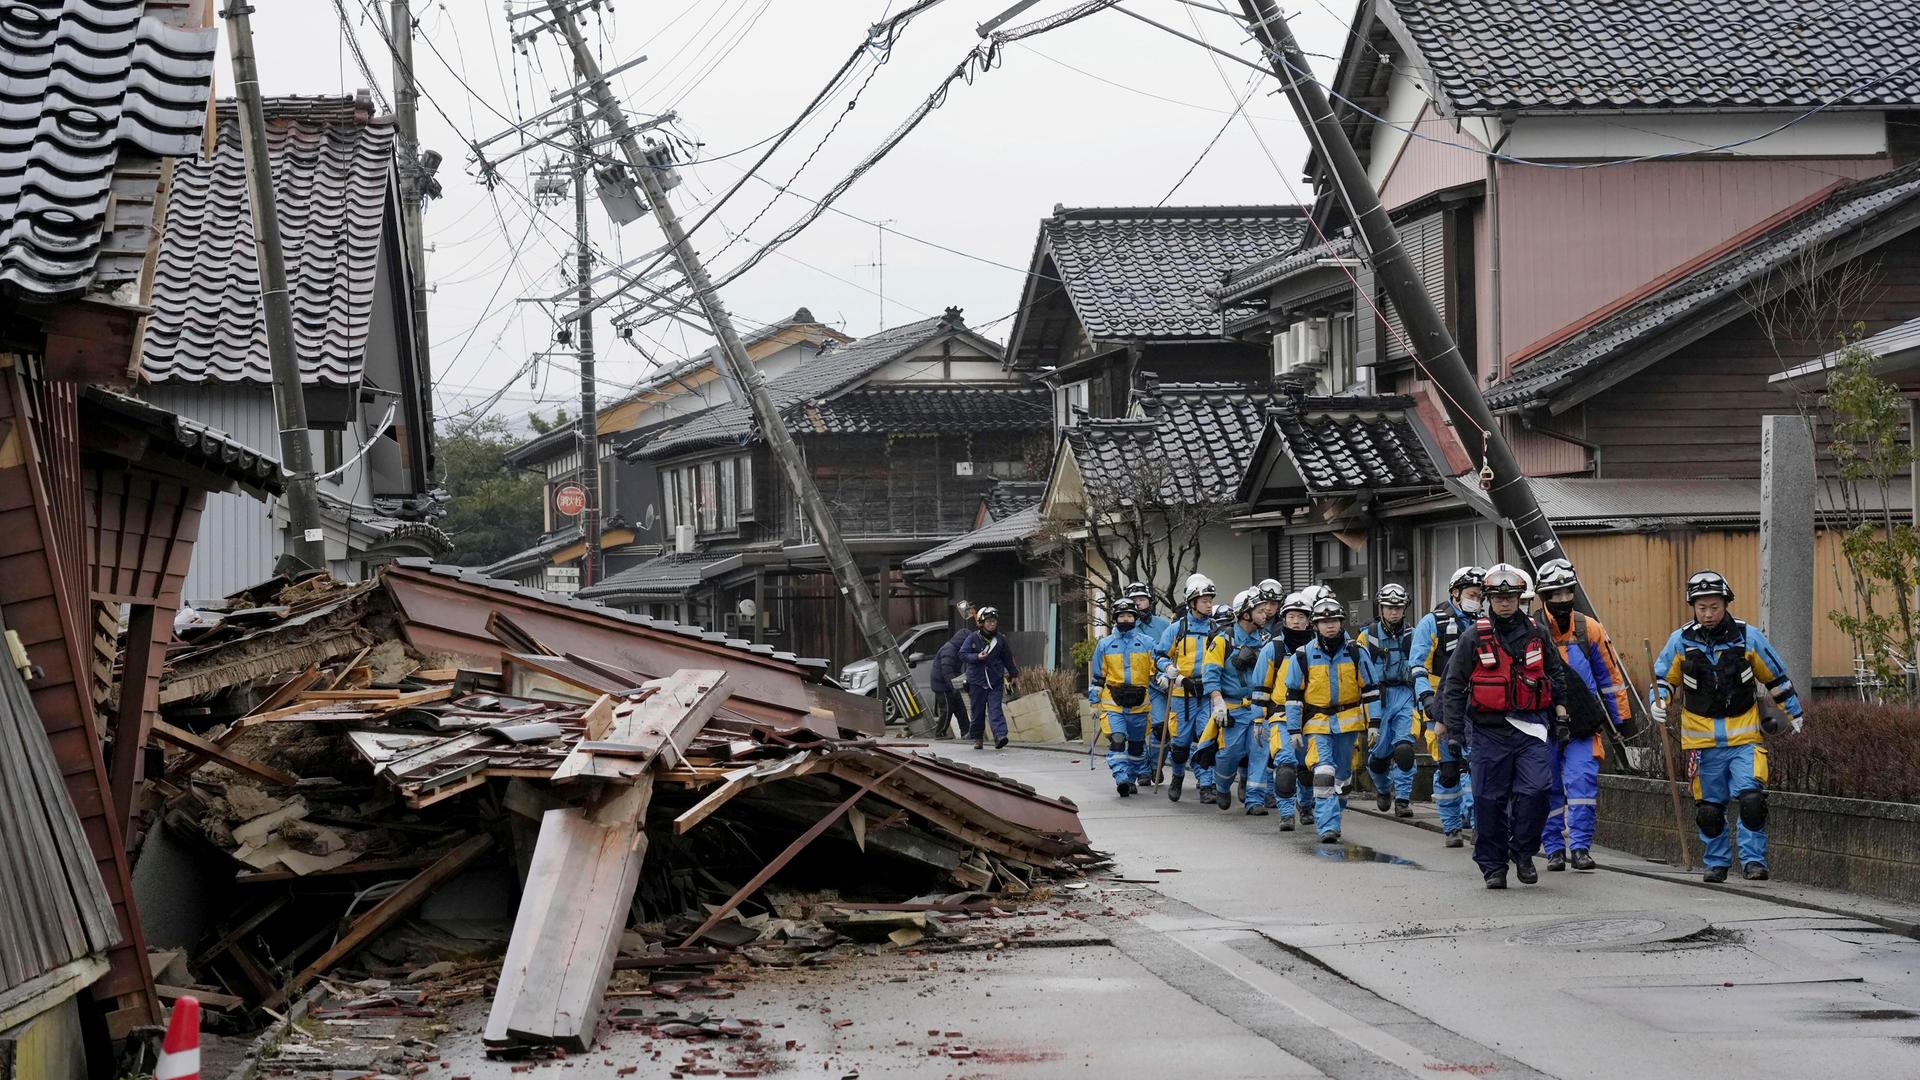 Japan, Suzu: Polizisten gehen an eingestürzten Häusern vorbei, die von den Erdbeben in Suzu, Präfektur Ishikawa getroffen wurden. Schlammlawinen und aufgerissene Straßen behindern die Suche nach Überlebenden.